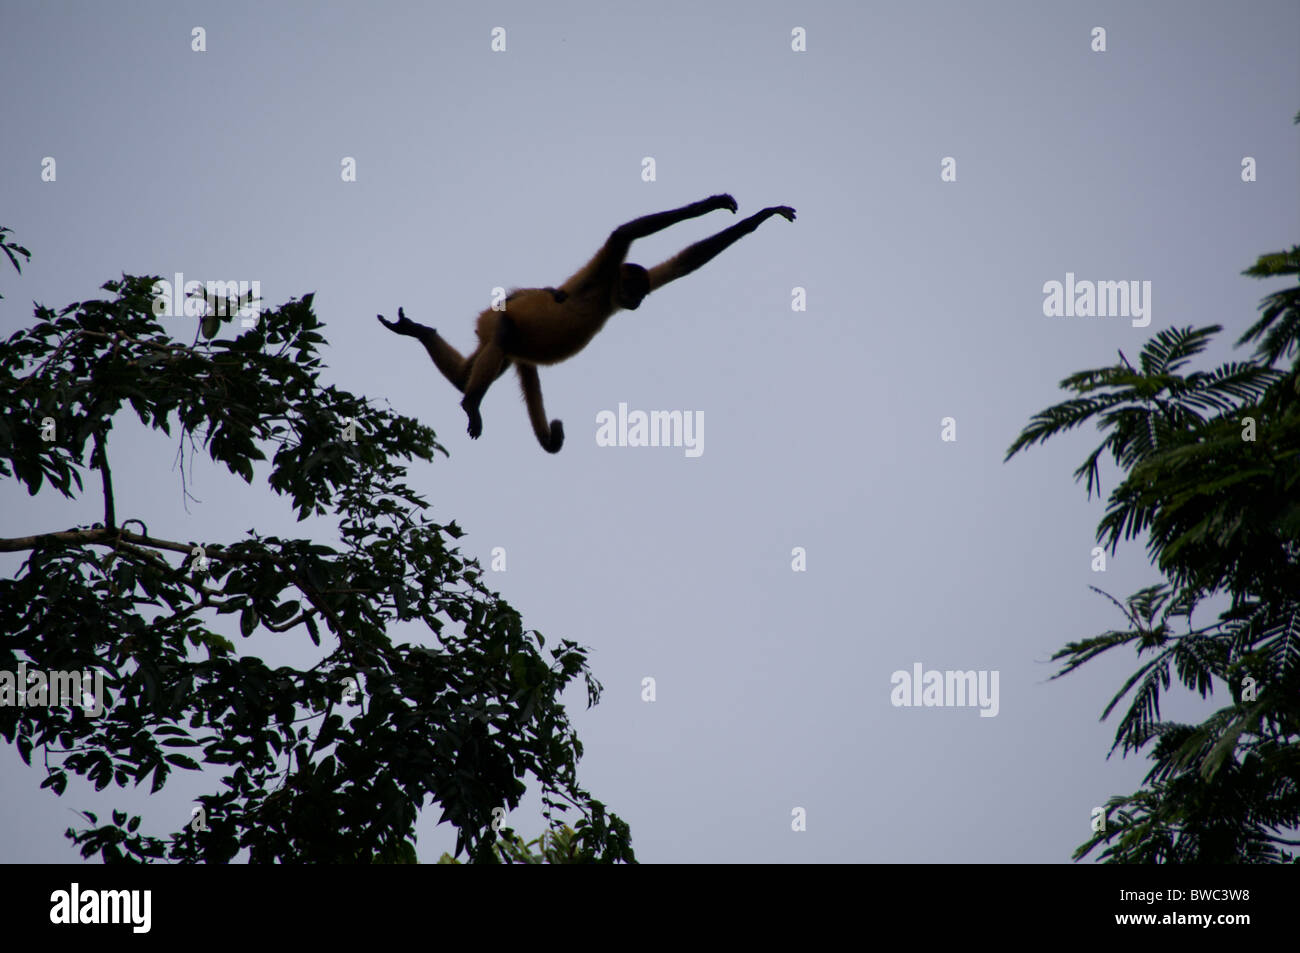 Un ragno ornati di scimmia (Ateles geoffroyi ornatus) salta da albero ad albero in Tortugero National Park, Costa Rica. Foto Stock